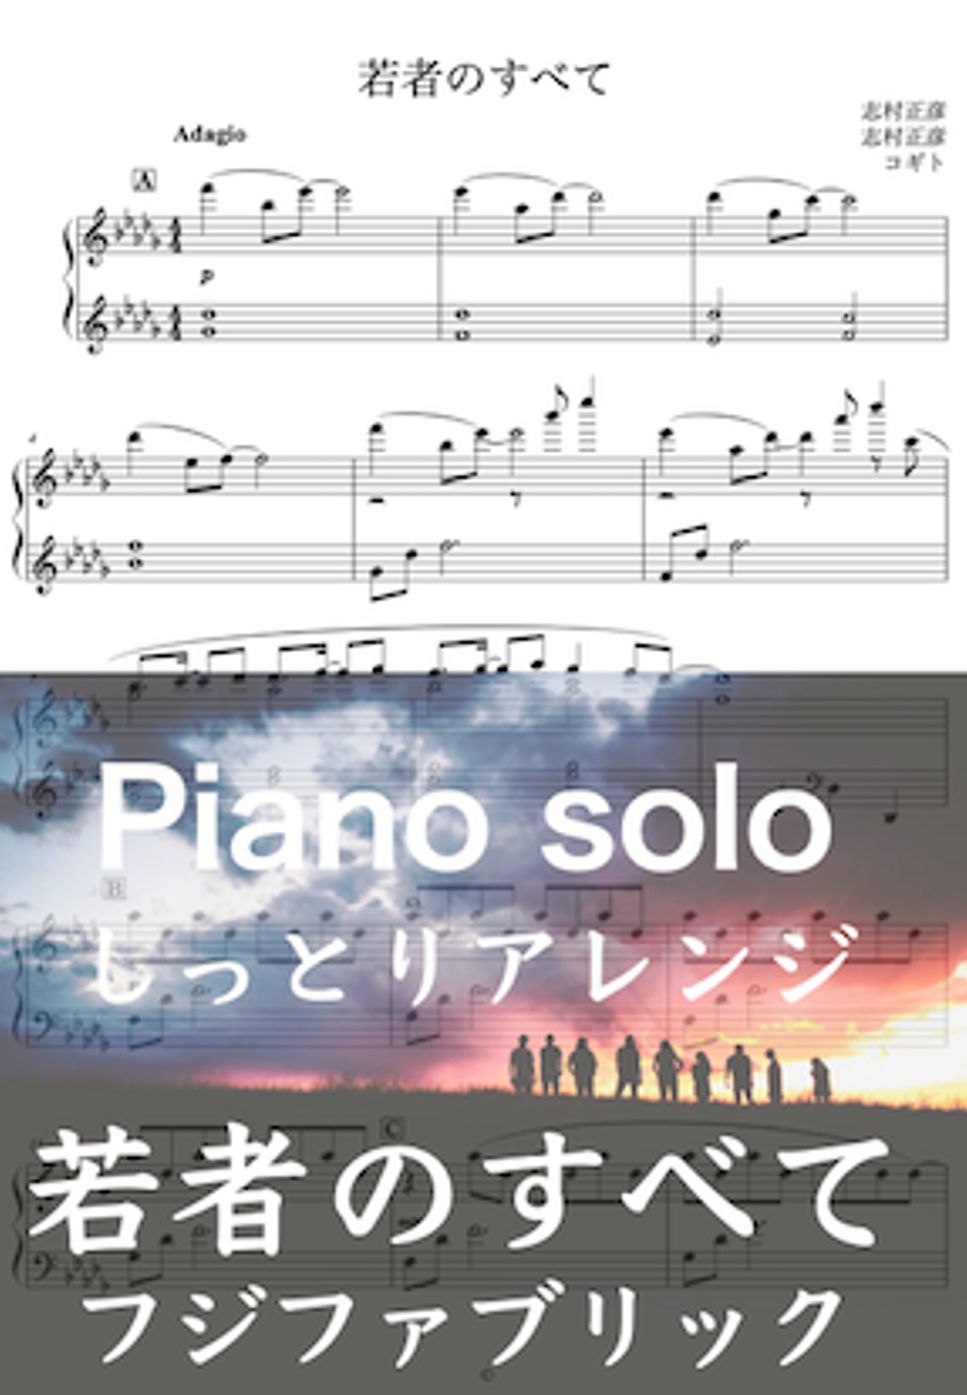 志村 正彦 - 若者のすべて (しっとりBGM / フジファブリック / ピアノ / アレンジ) by コギト